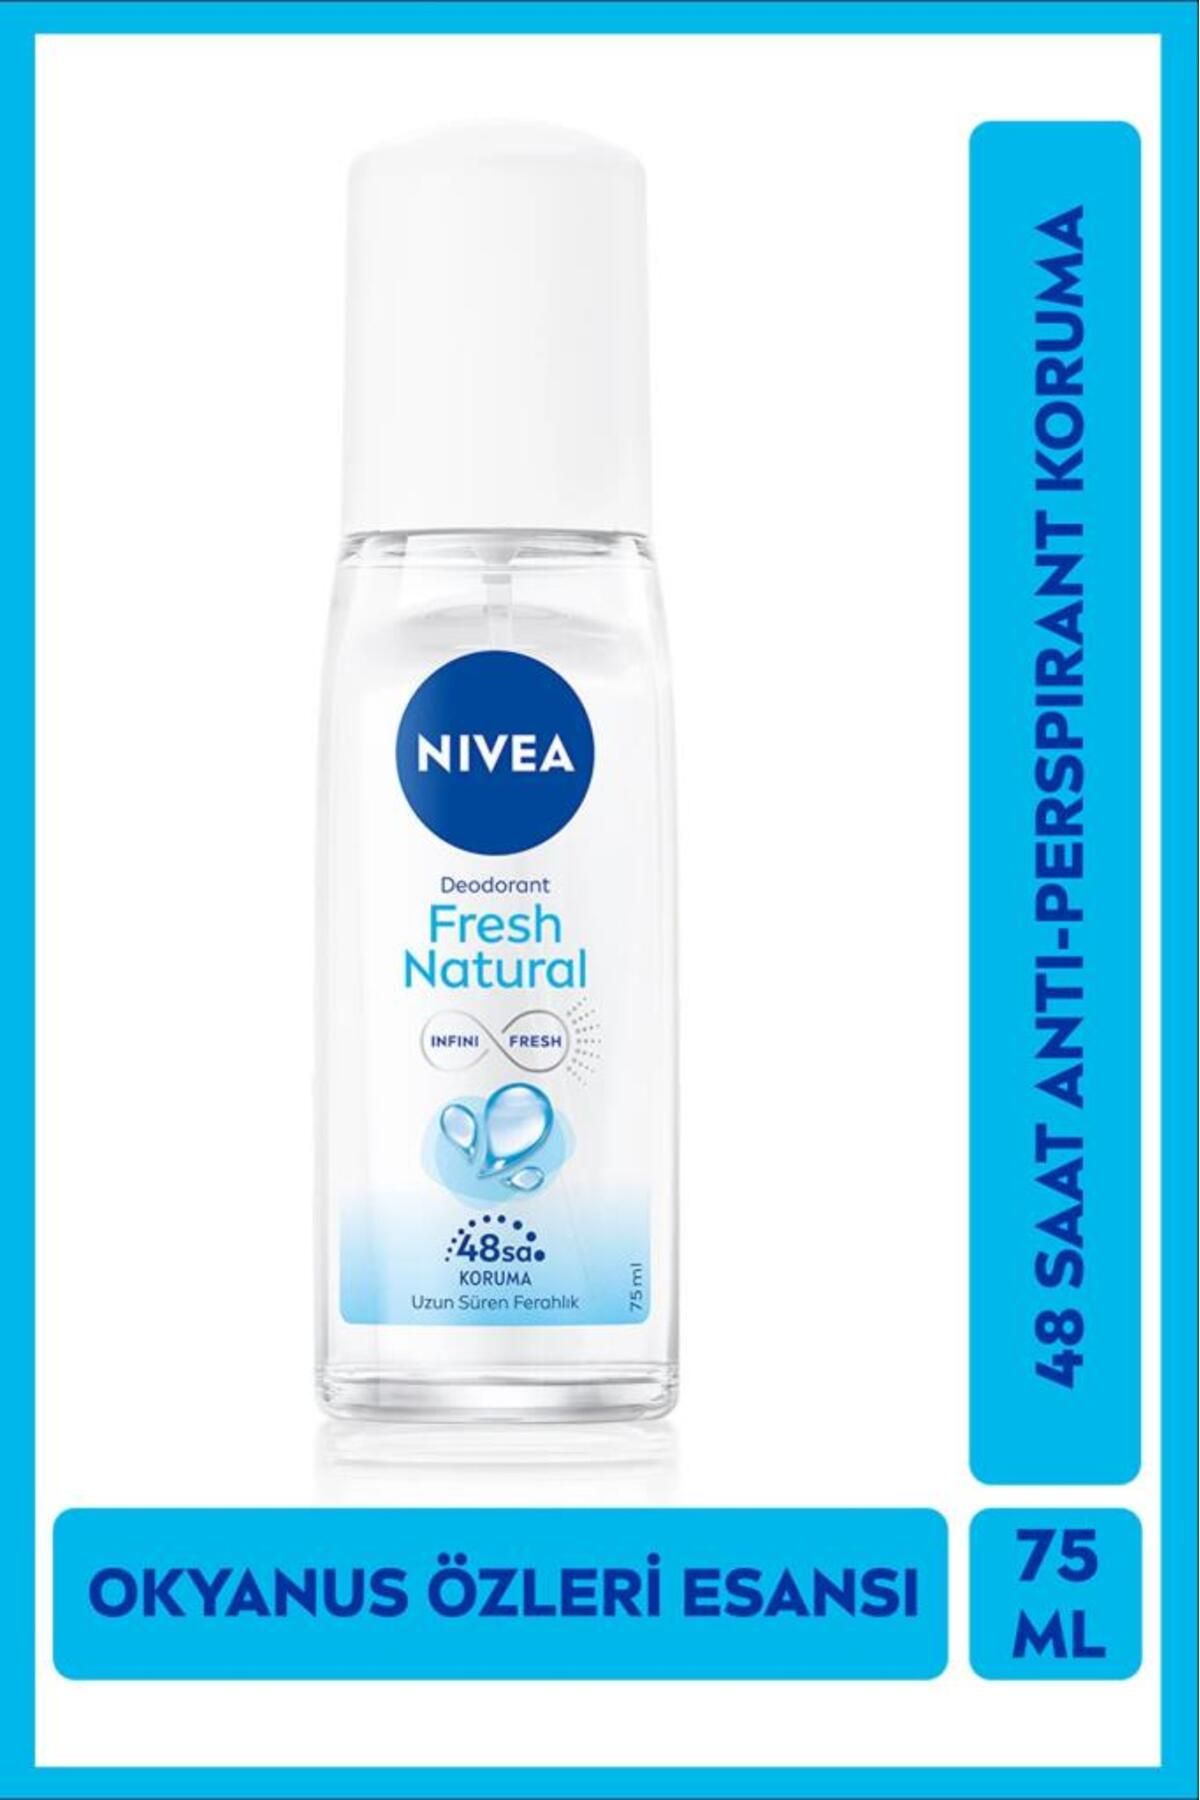 NIVEA Kadın Pump Sprey Deodorant 75ml, 48 Saat Anti-perspirant Koruma, Okyanus Özleri Kokusu